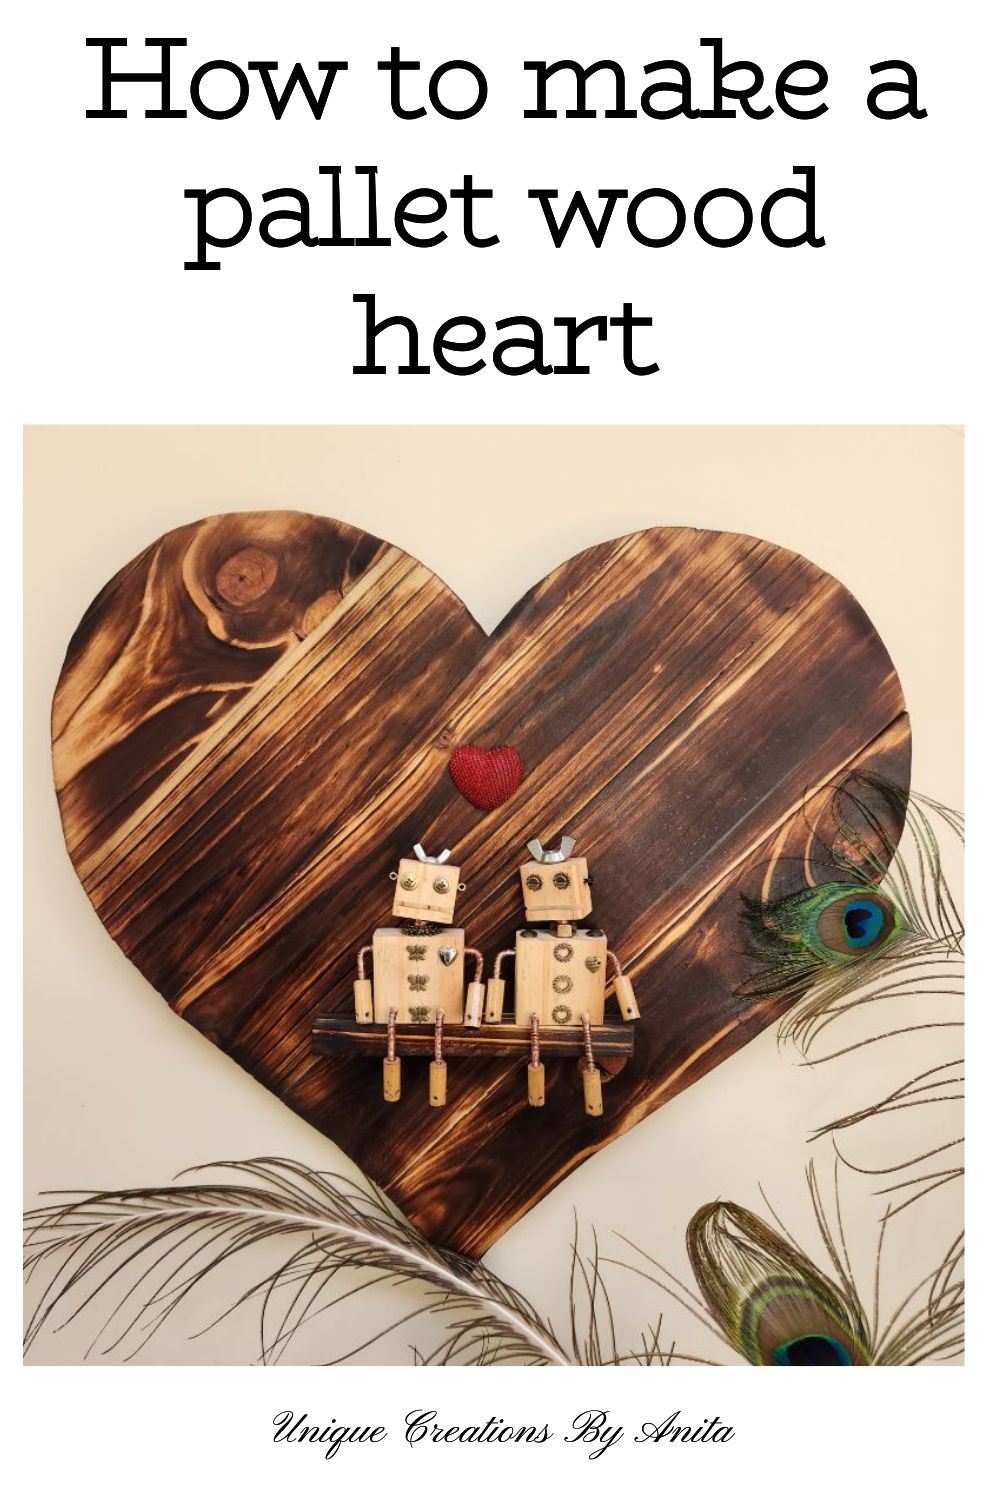 Ξύλινη καρδιά από παλέτες με επιφάνεια σούγκι μπαν.  Με μερικά ξύλινα ρομπότ για να κάνετε το τέλειο δώρο του Αγίου Βαλεντίνου.